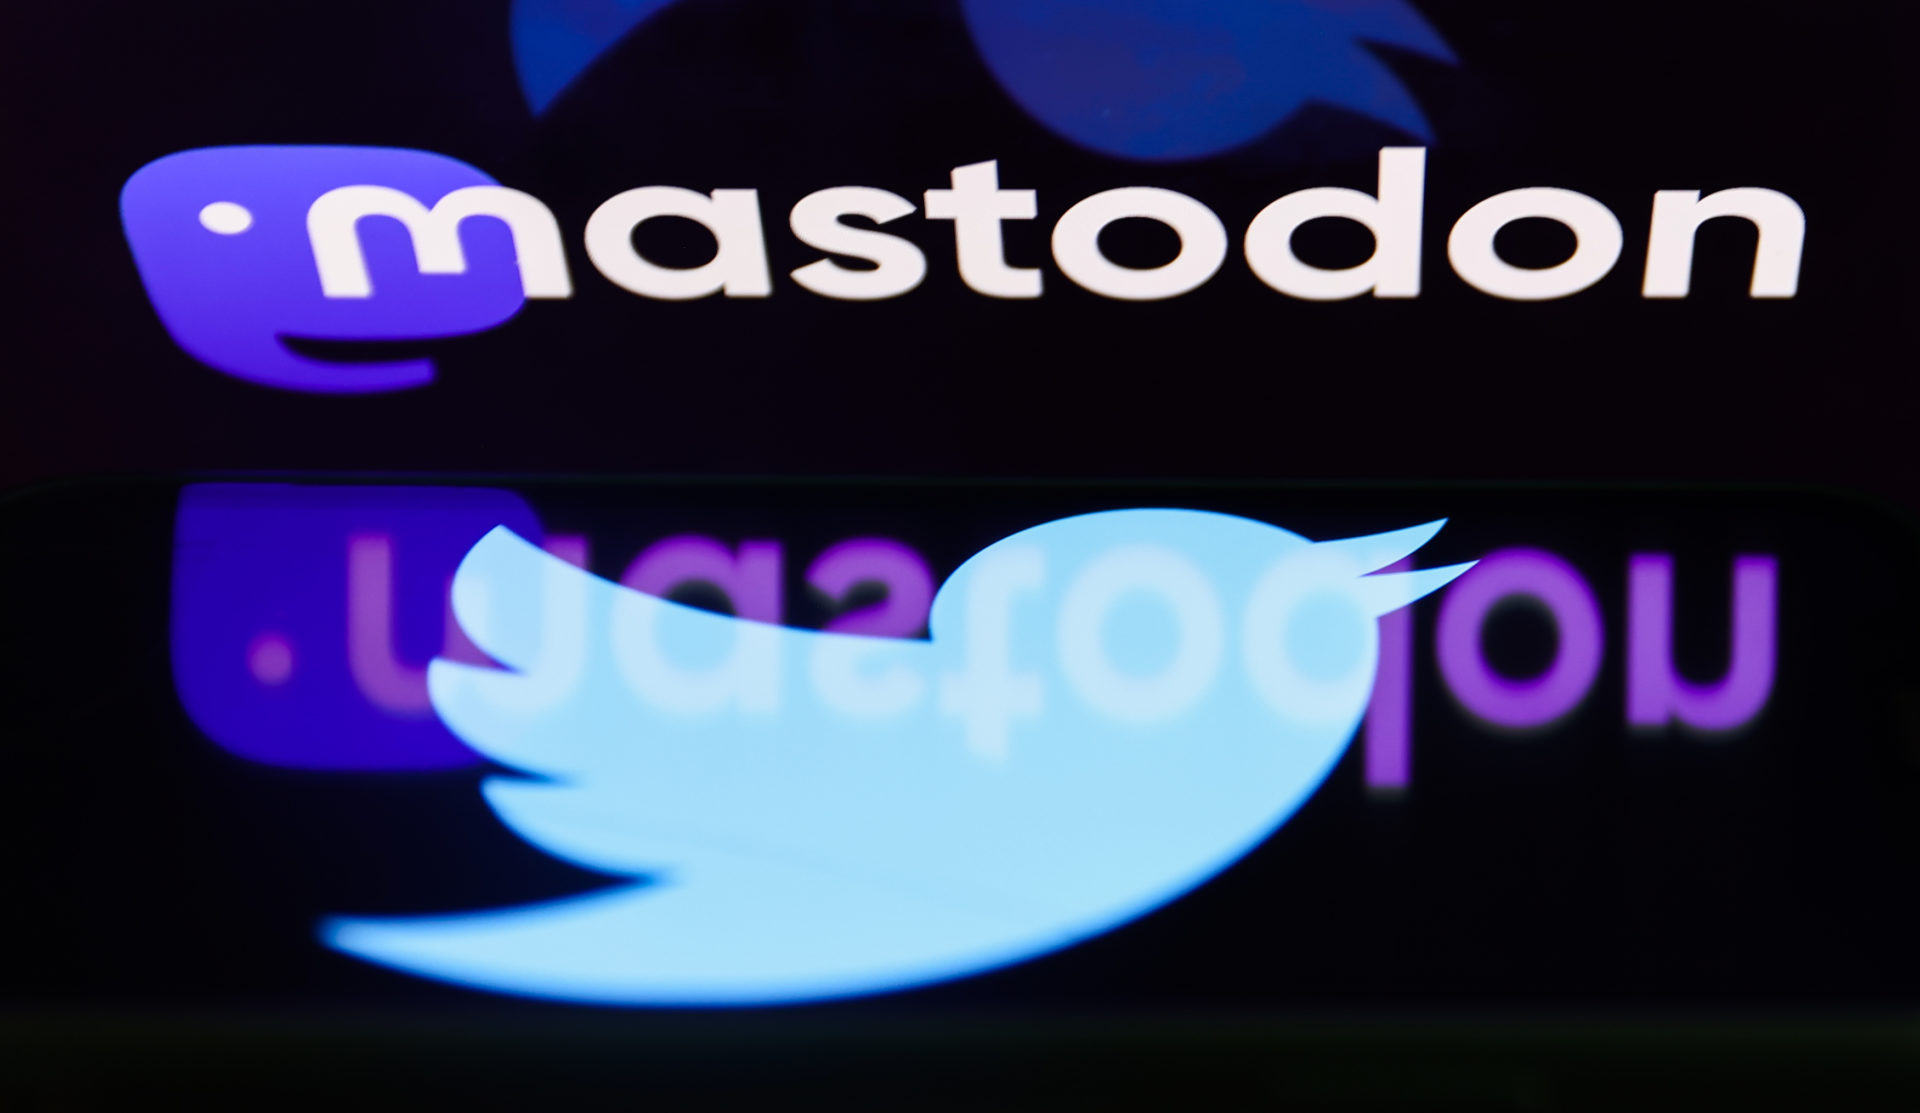 Twitter And Mastodon Photo Illustrations